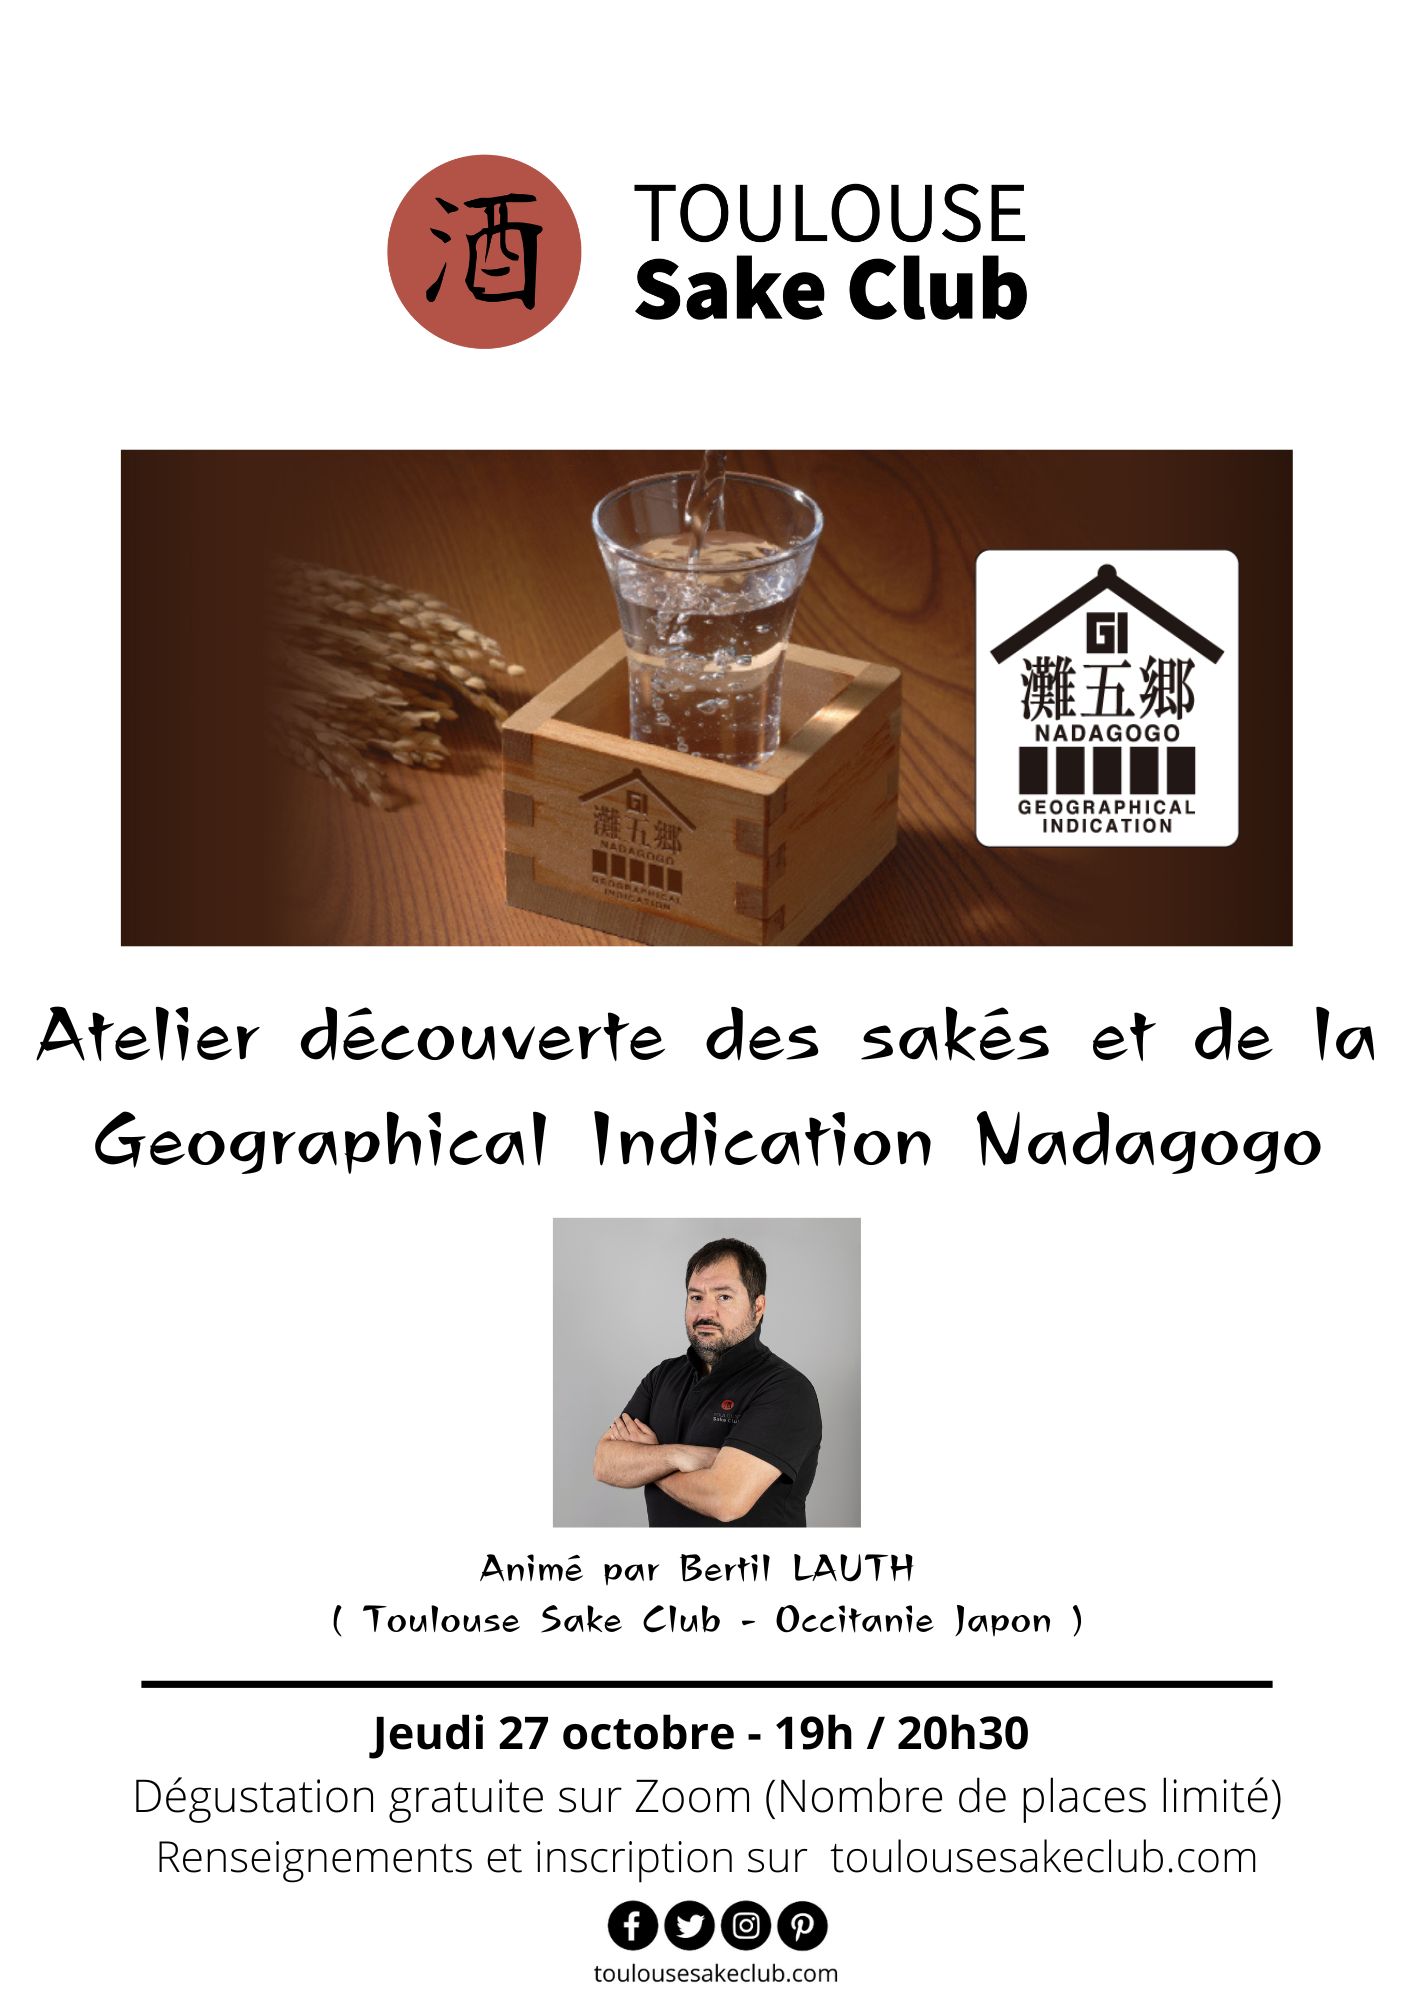 Atelier découverte des sakés et de la Geographical Indication Nadagogo avec le Toulouse Sake Club